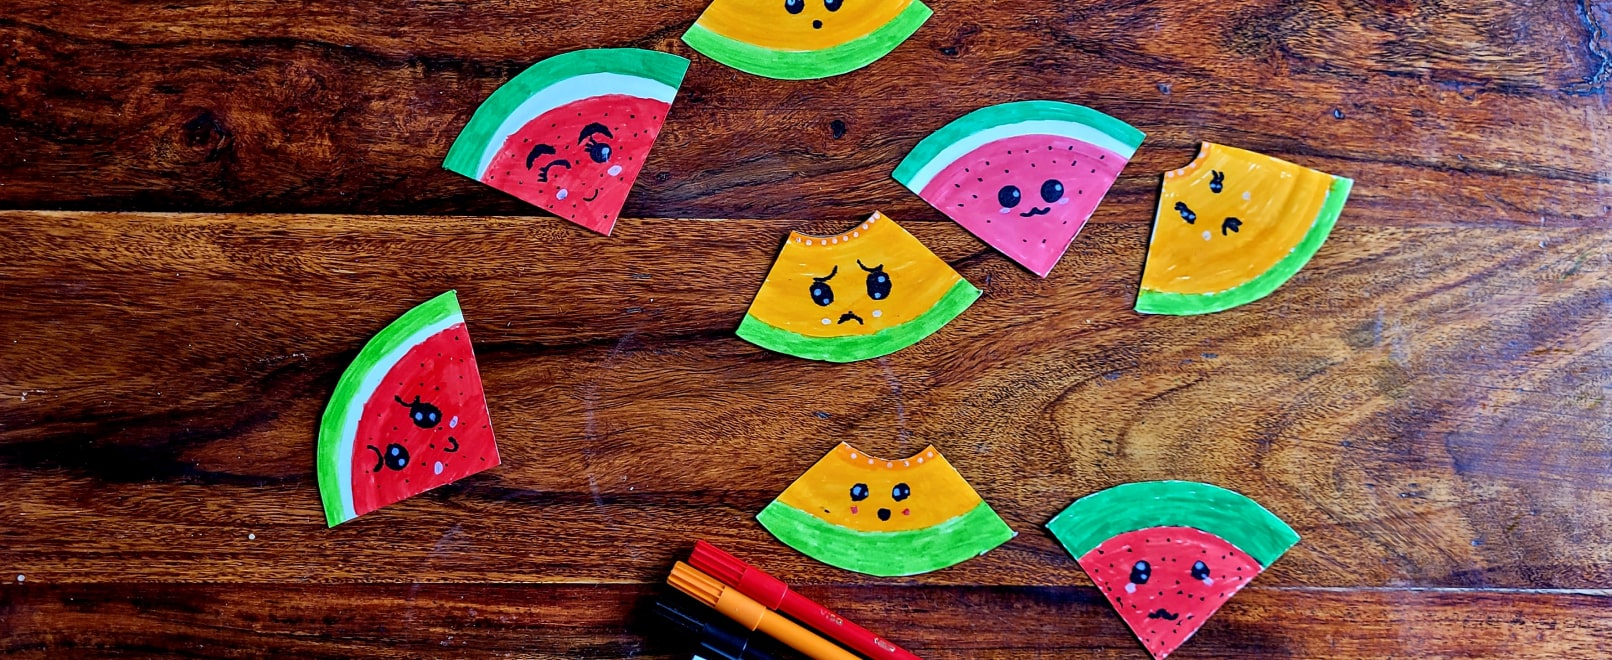 Création enfant : des pastèques et des melons en carton